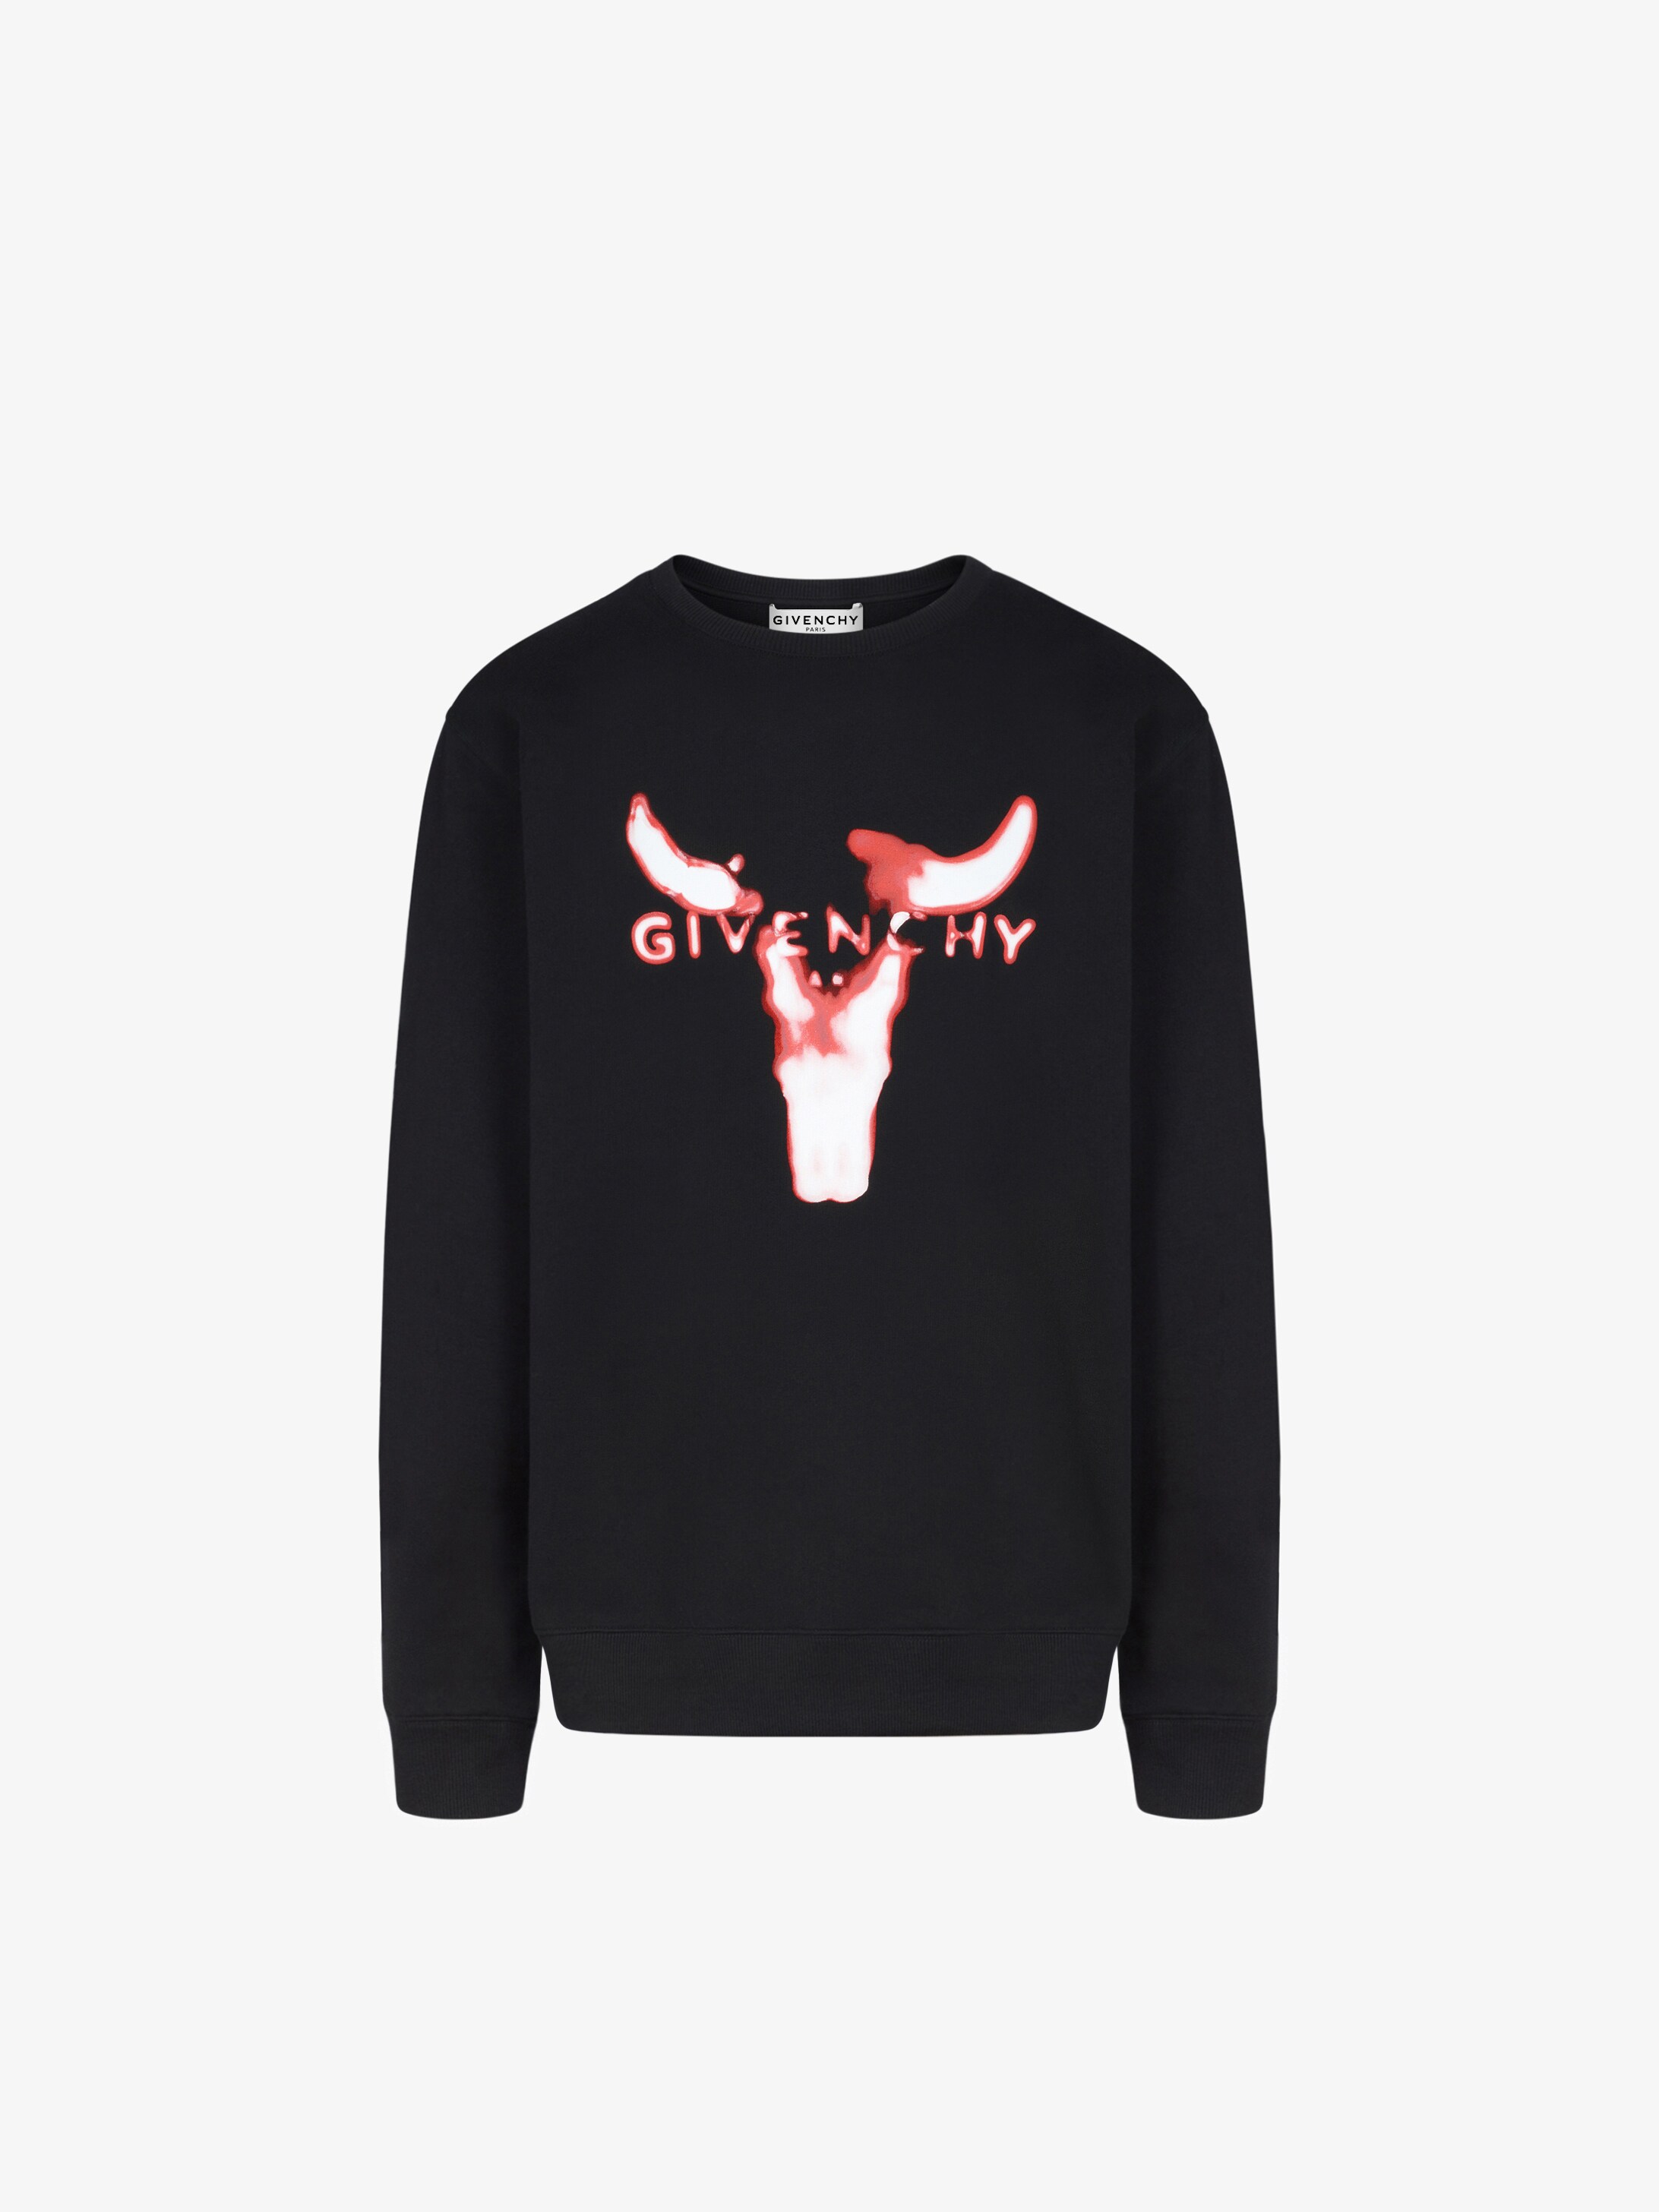 GIVENCHY Bull sweatshirt | GIVENCHY Paris